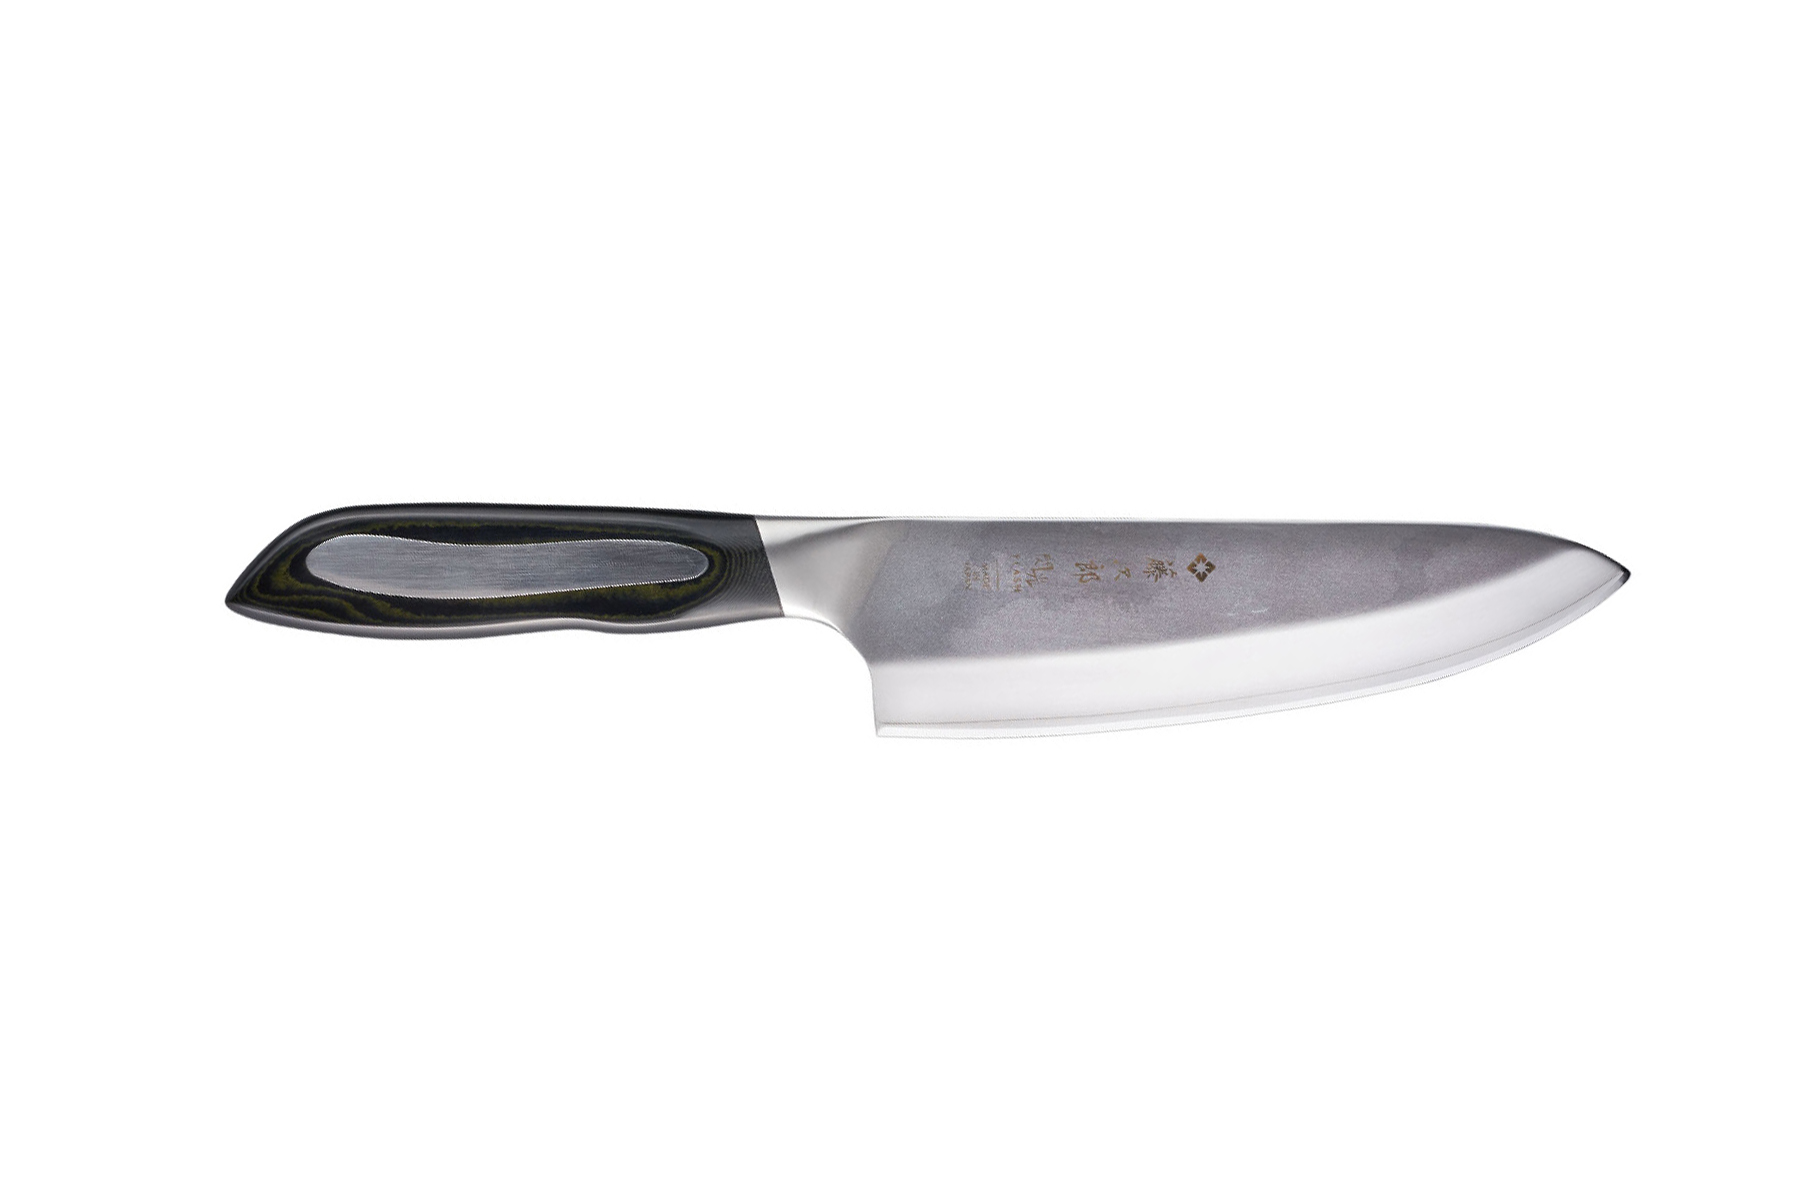 Couteaux de cuisine Tojiro Damas Pro